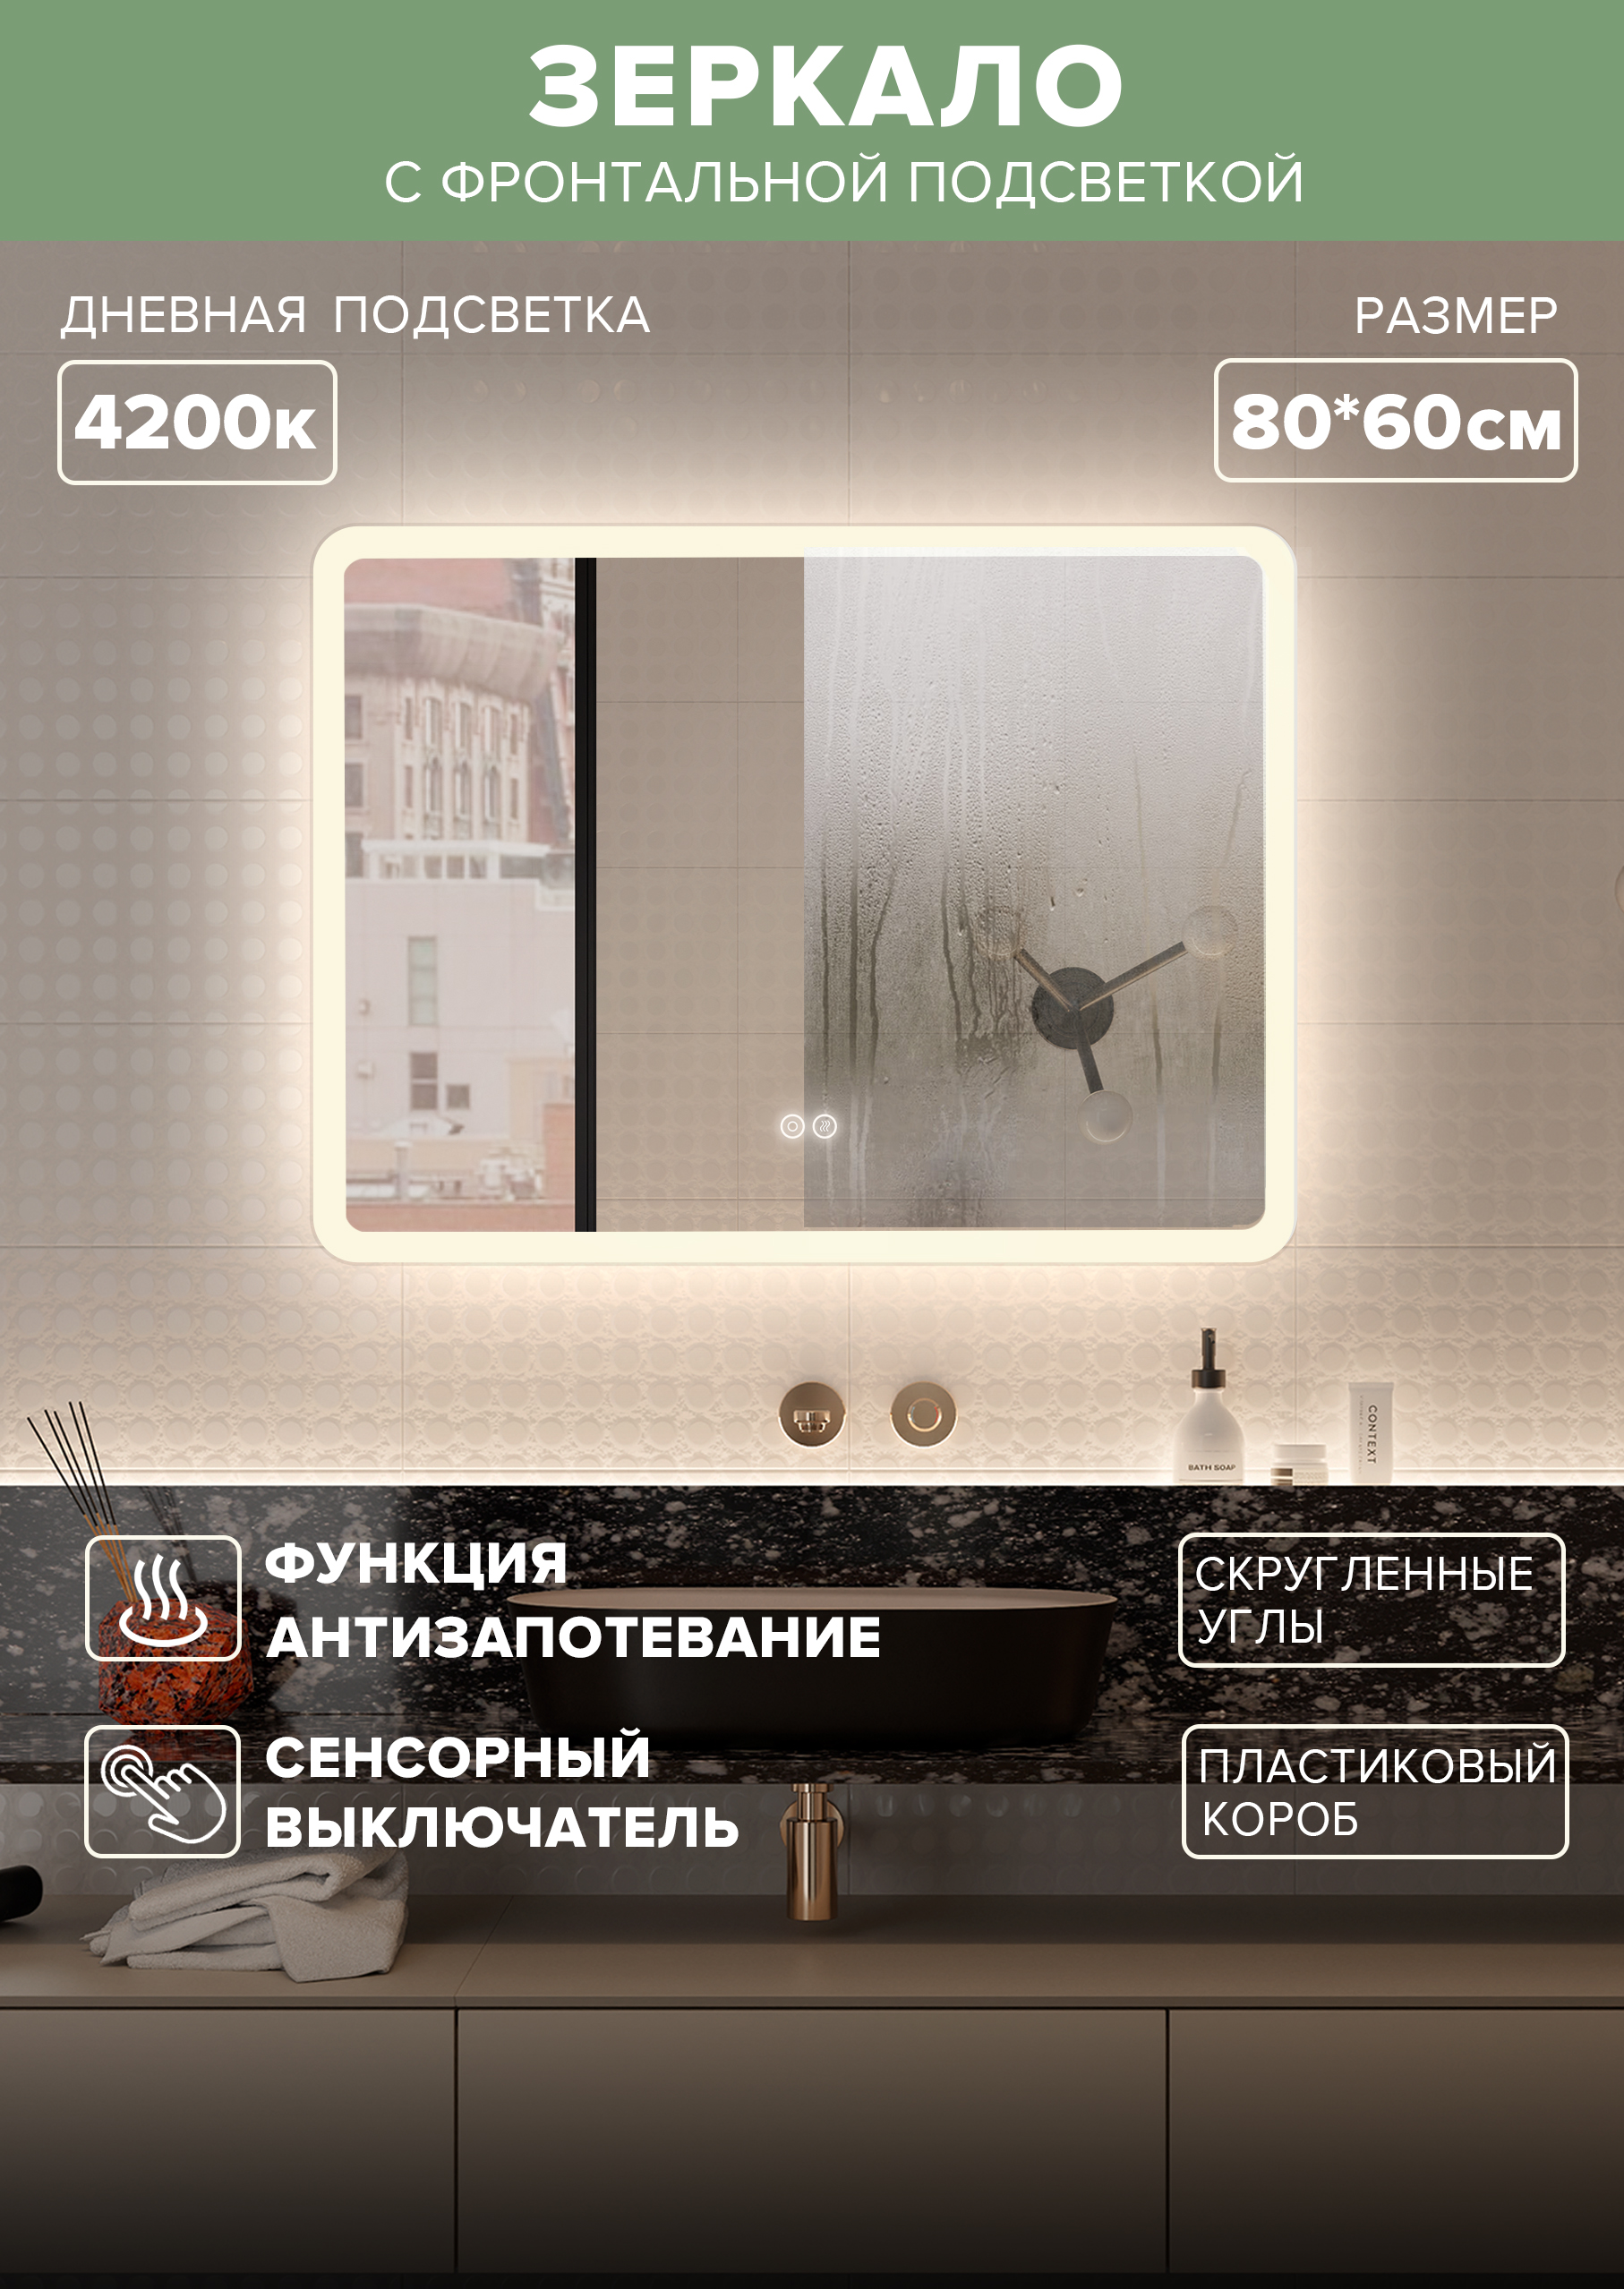 Зеркало для ванной Alfa Mirrors MDi-86Ad дневная подсветка 4200К, обогрев, прямоуг. 80*60